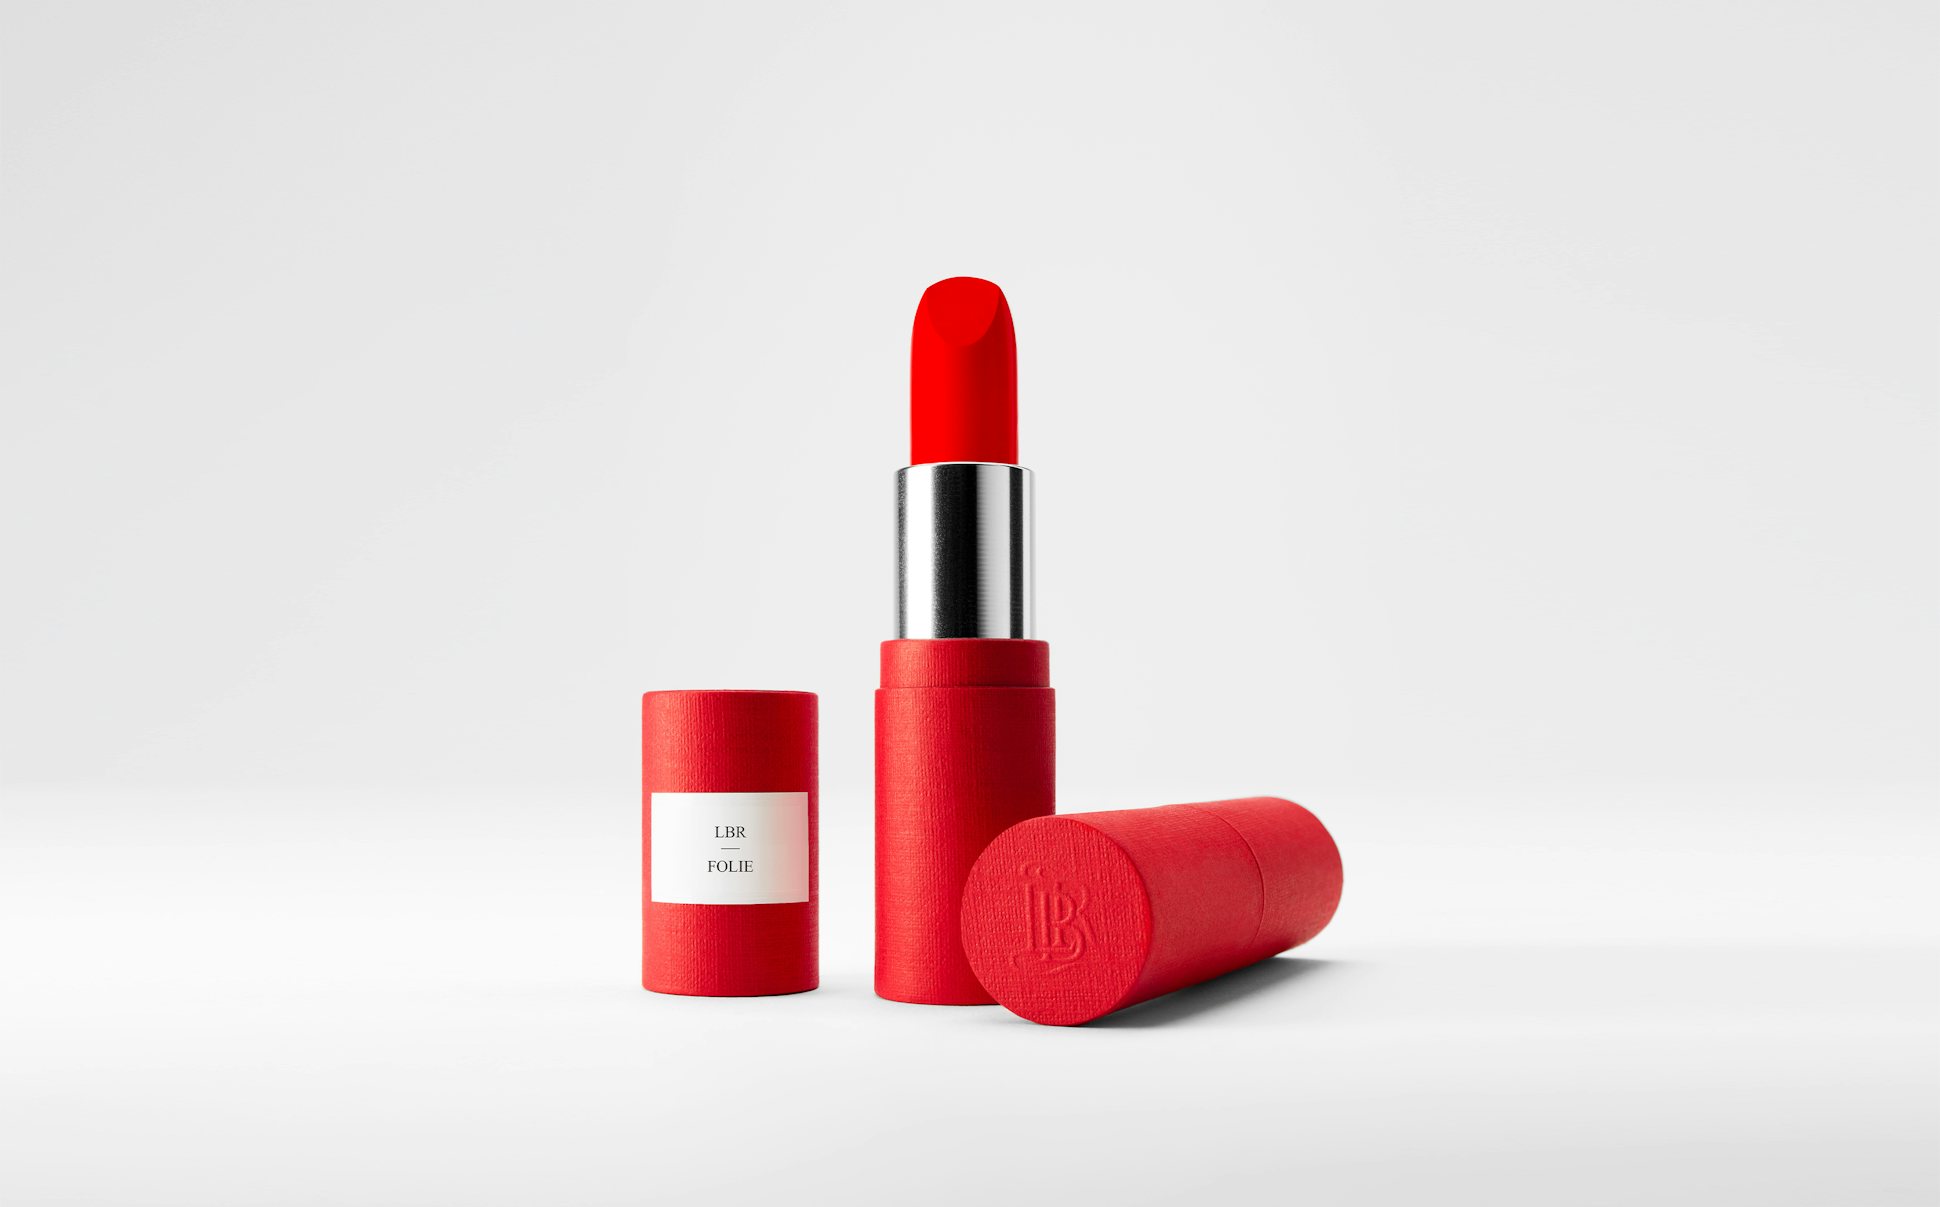 La bouche rouge Folie lipstick in the red paper case